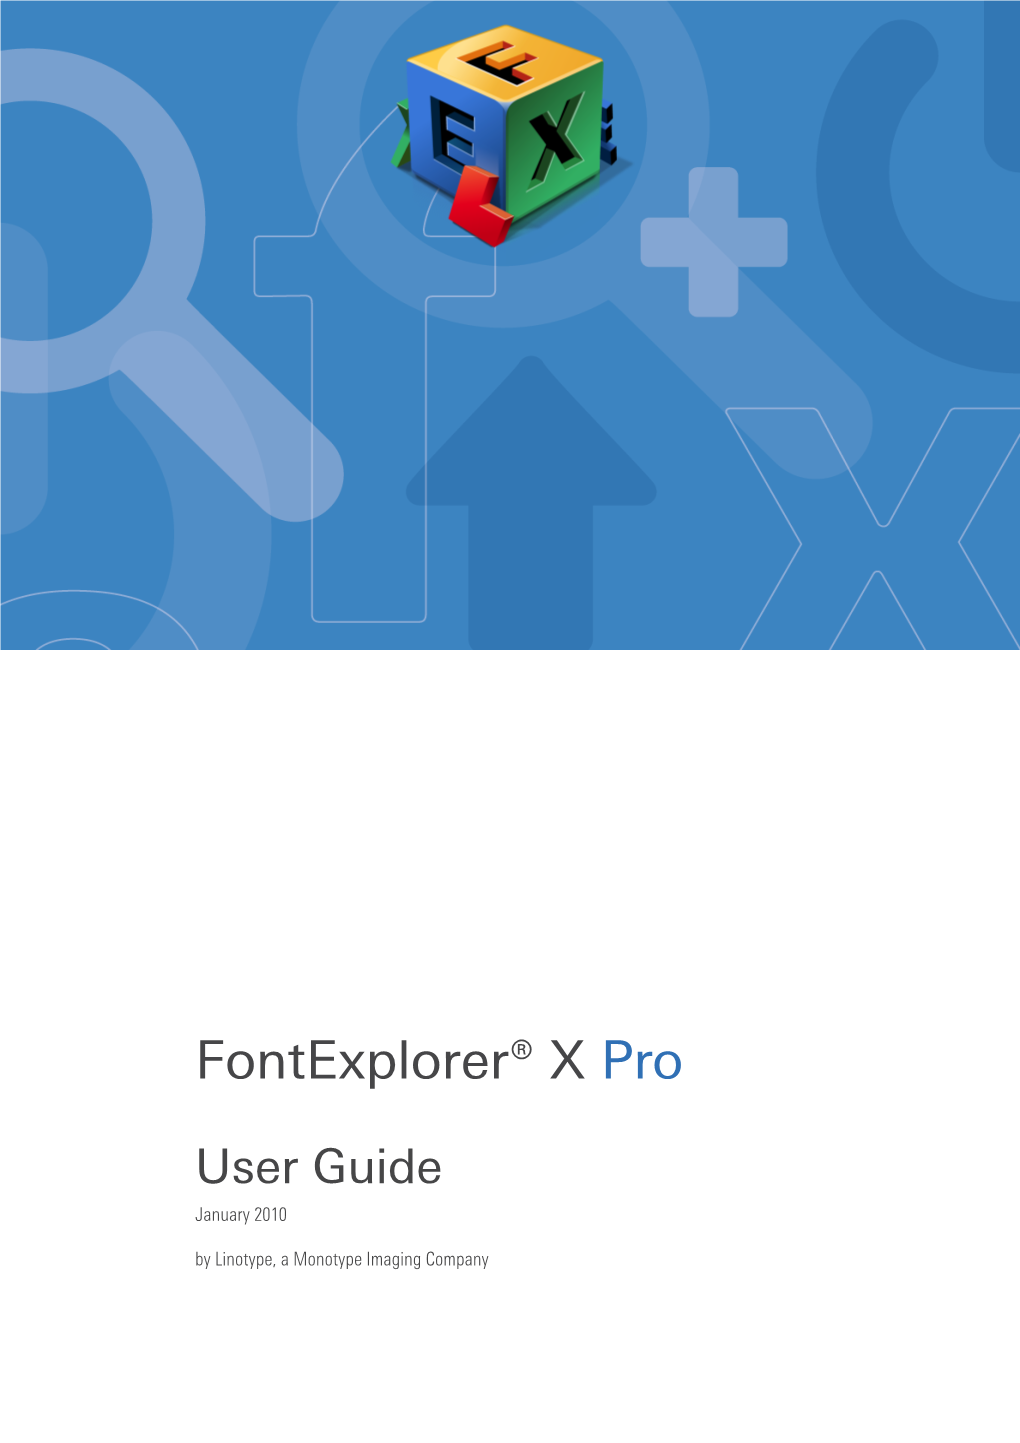 Fontexplorer® X Pro